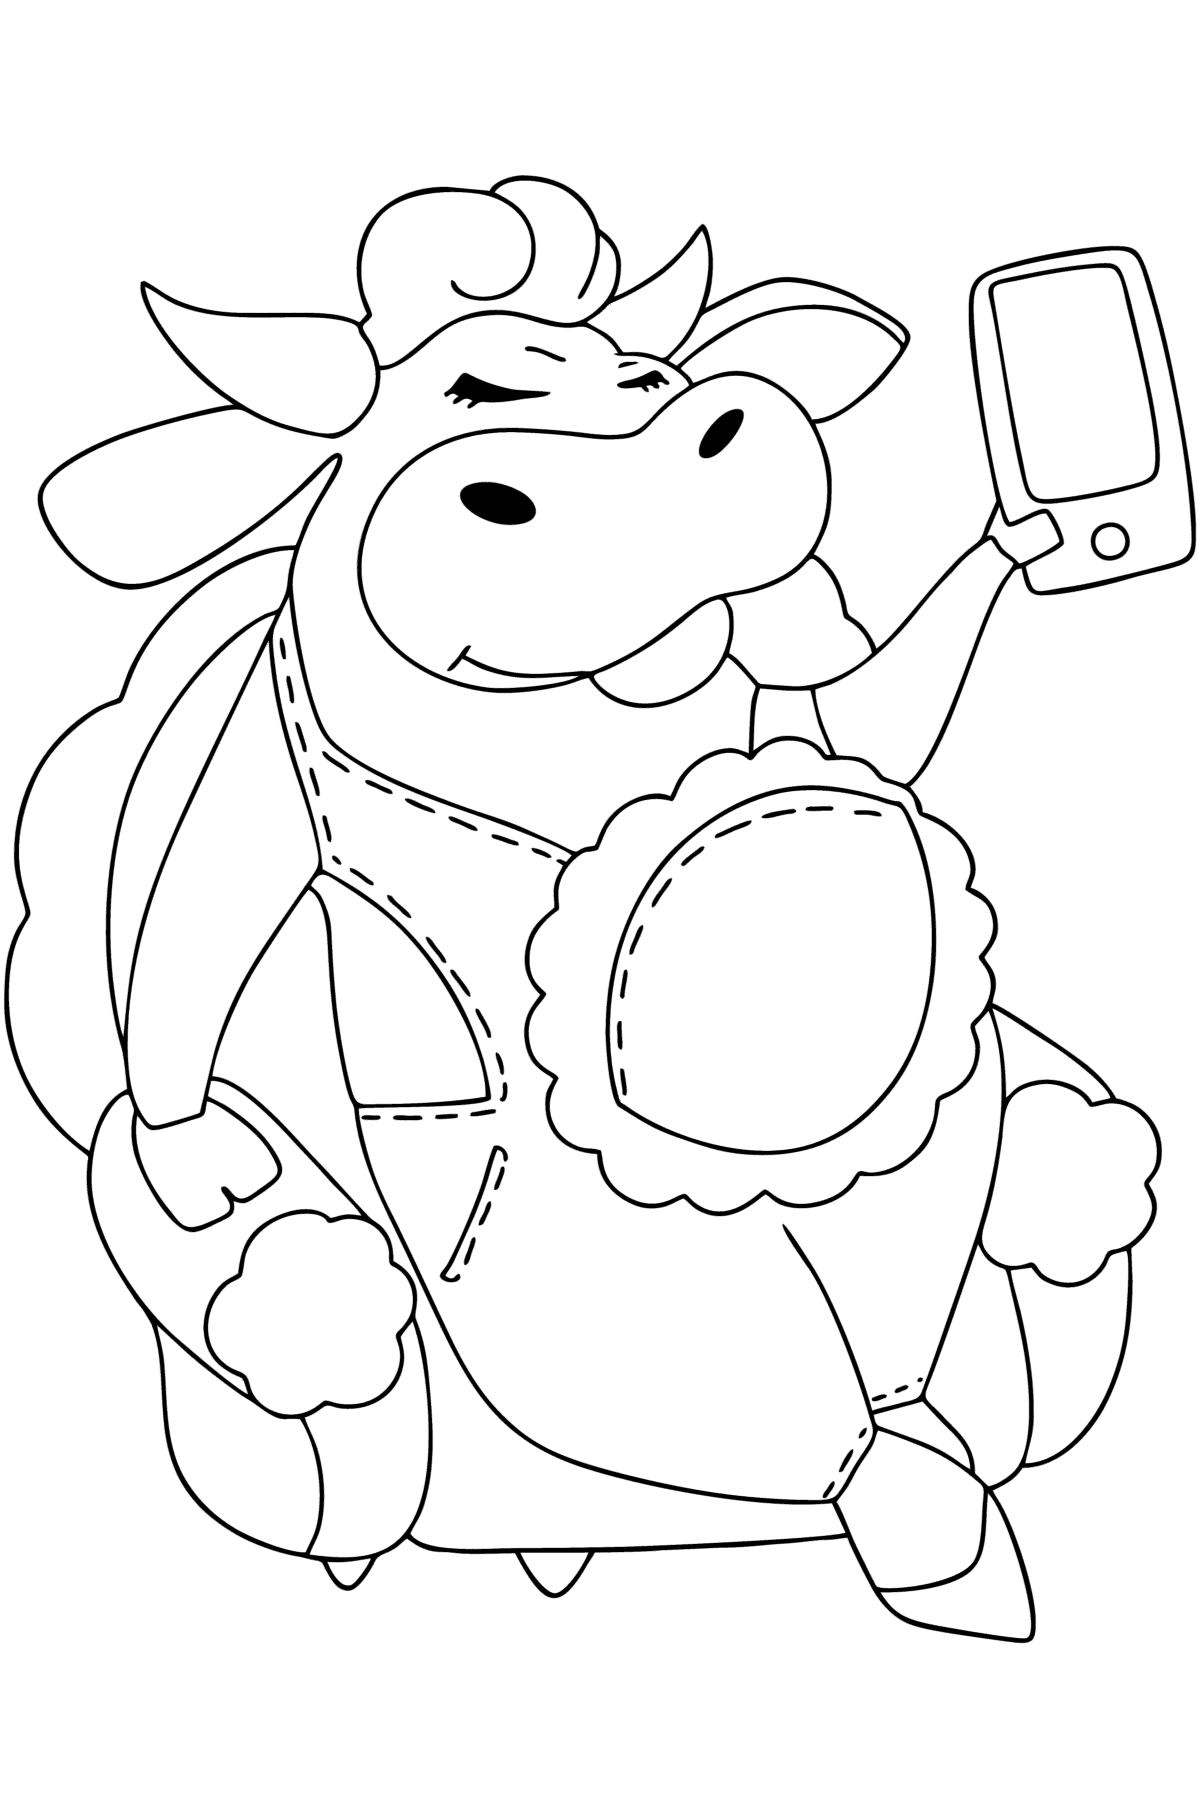 Забавная корова раскраска - Картинки для Детей